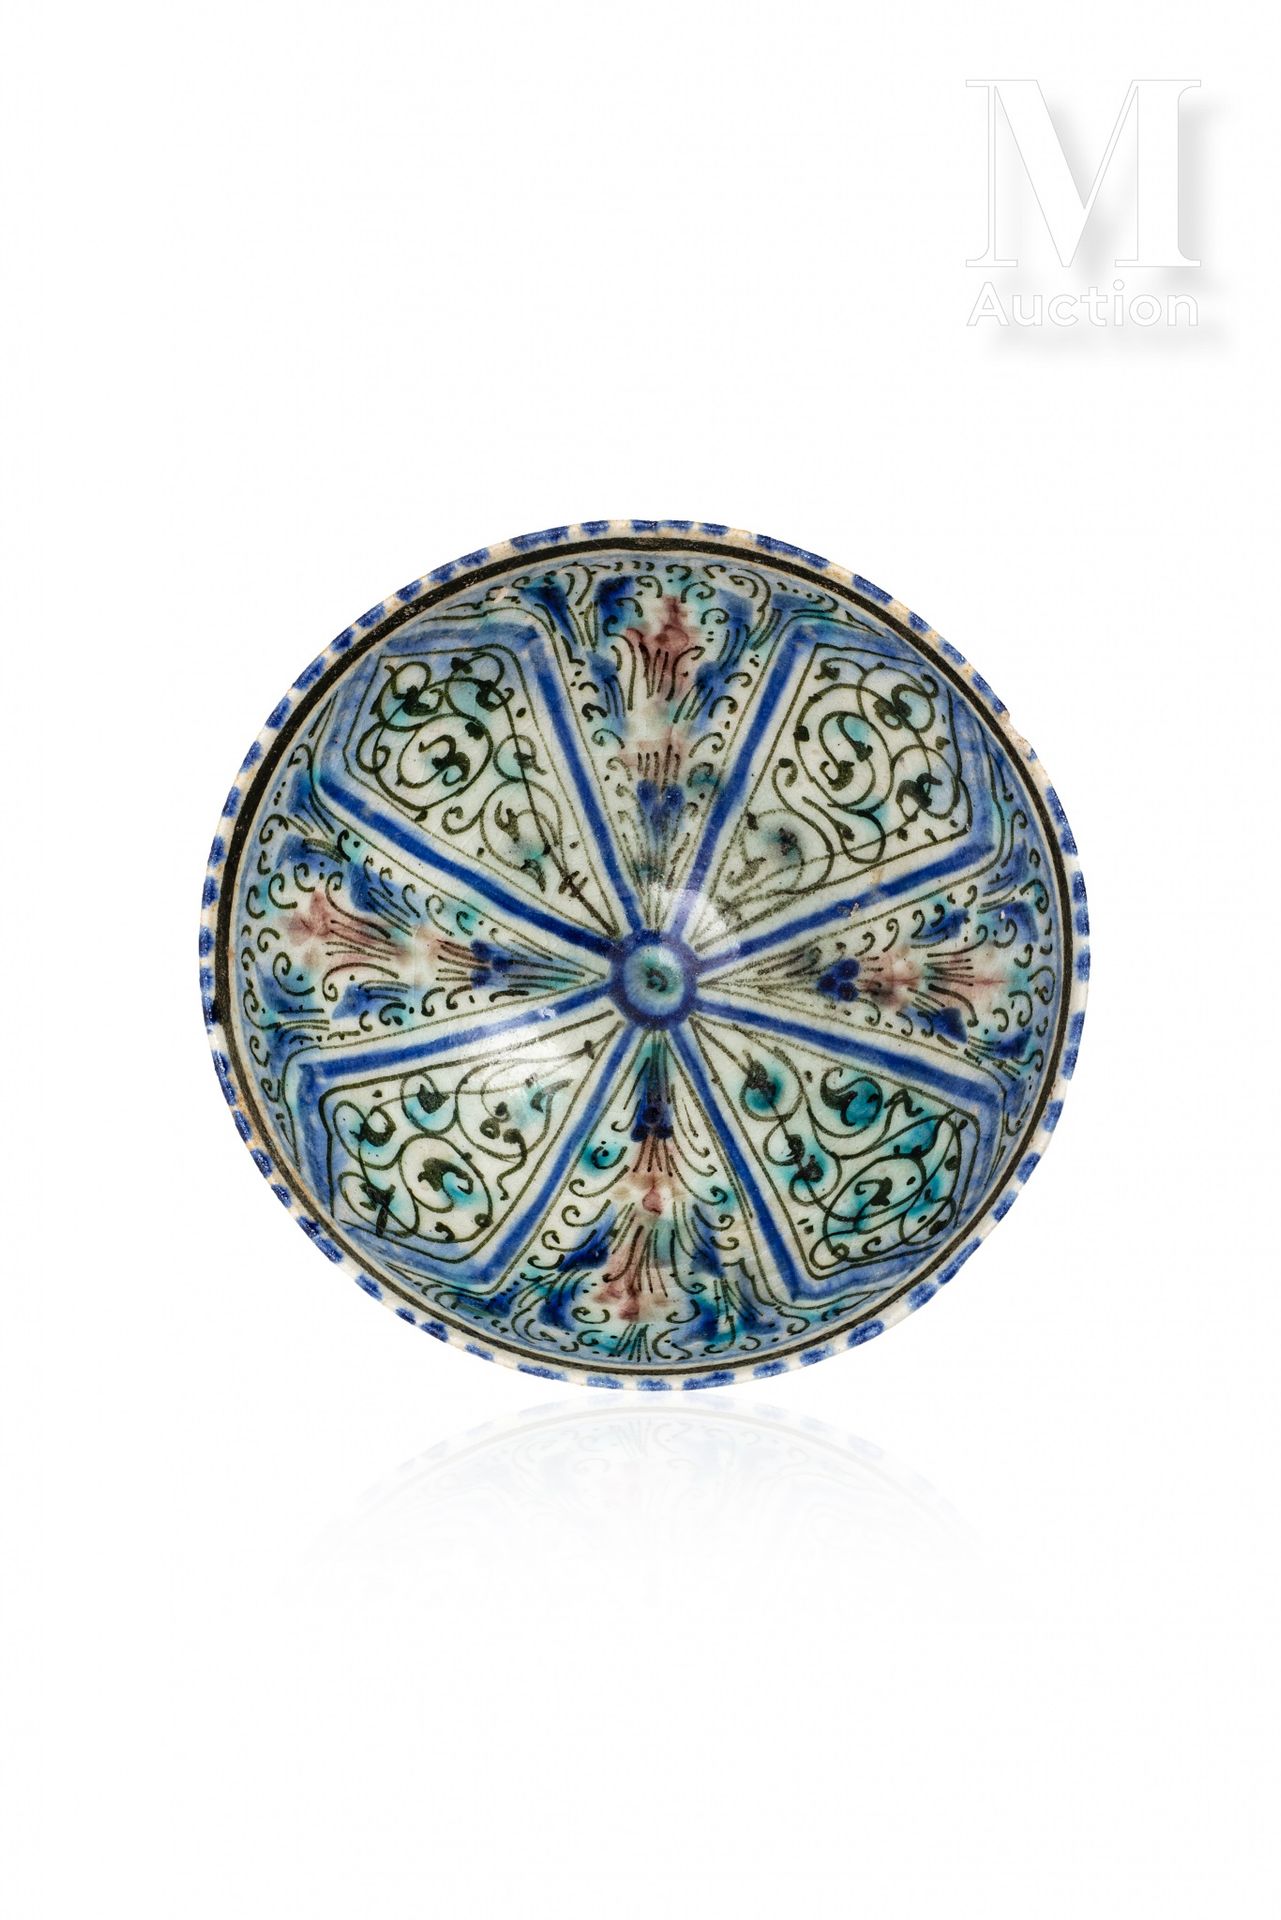 Coupe ilkhanide Iran, Sultanabad, XIVe siècle

Coupe sur piédouche en céramique &hellip;